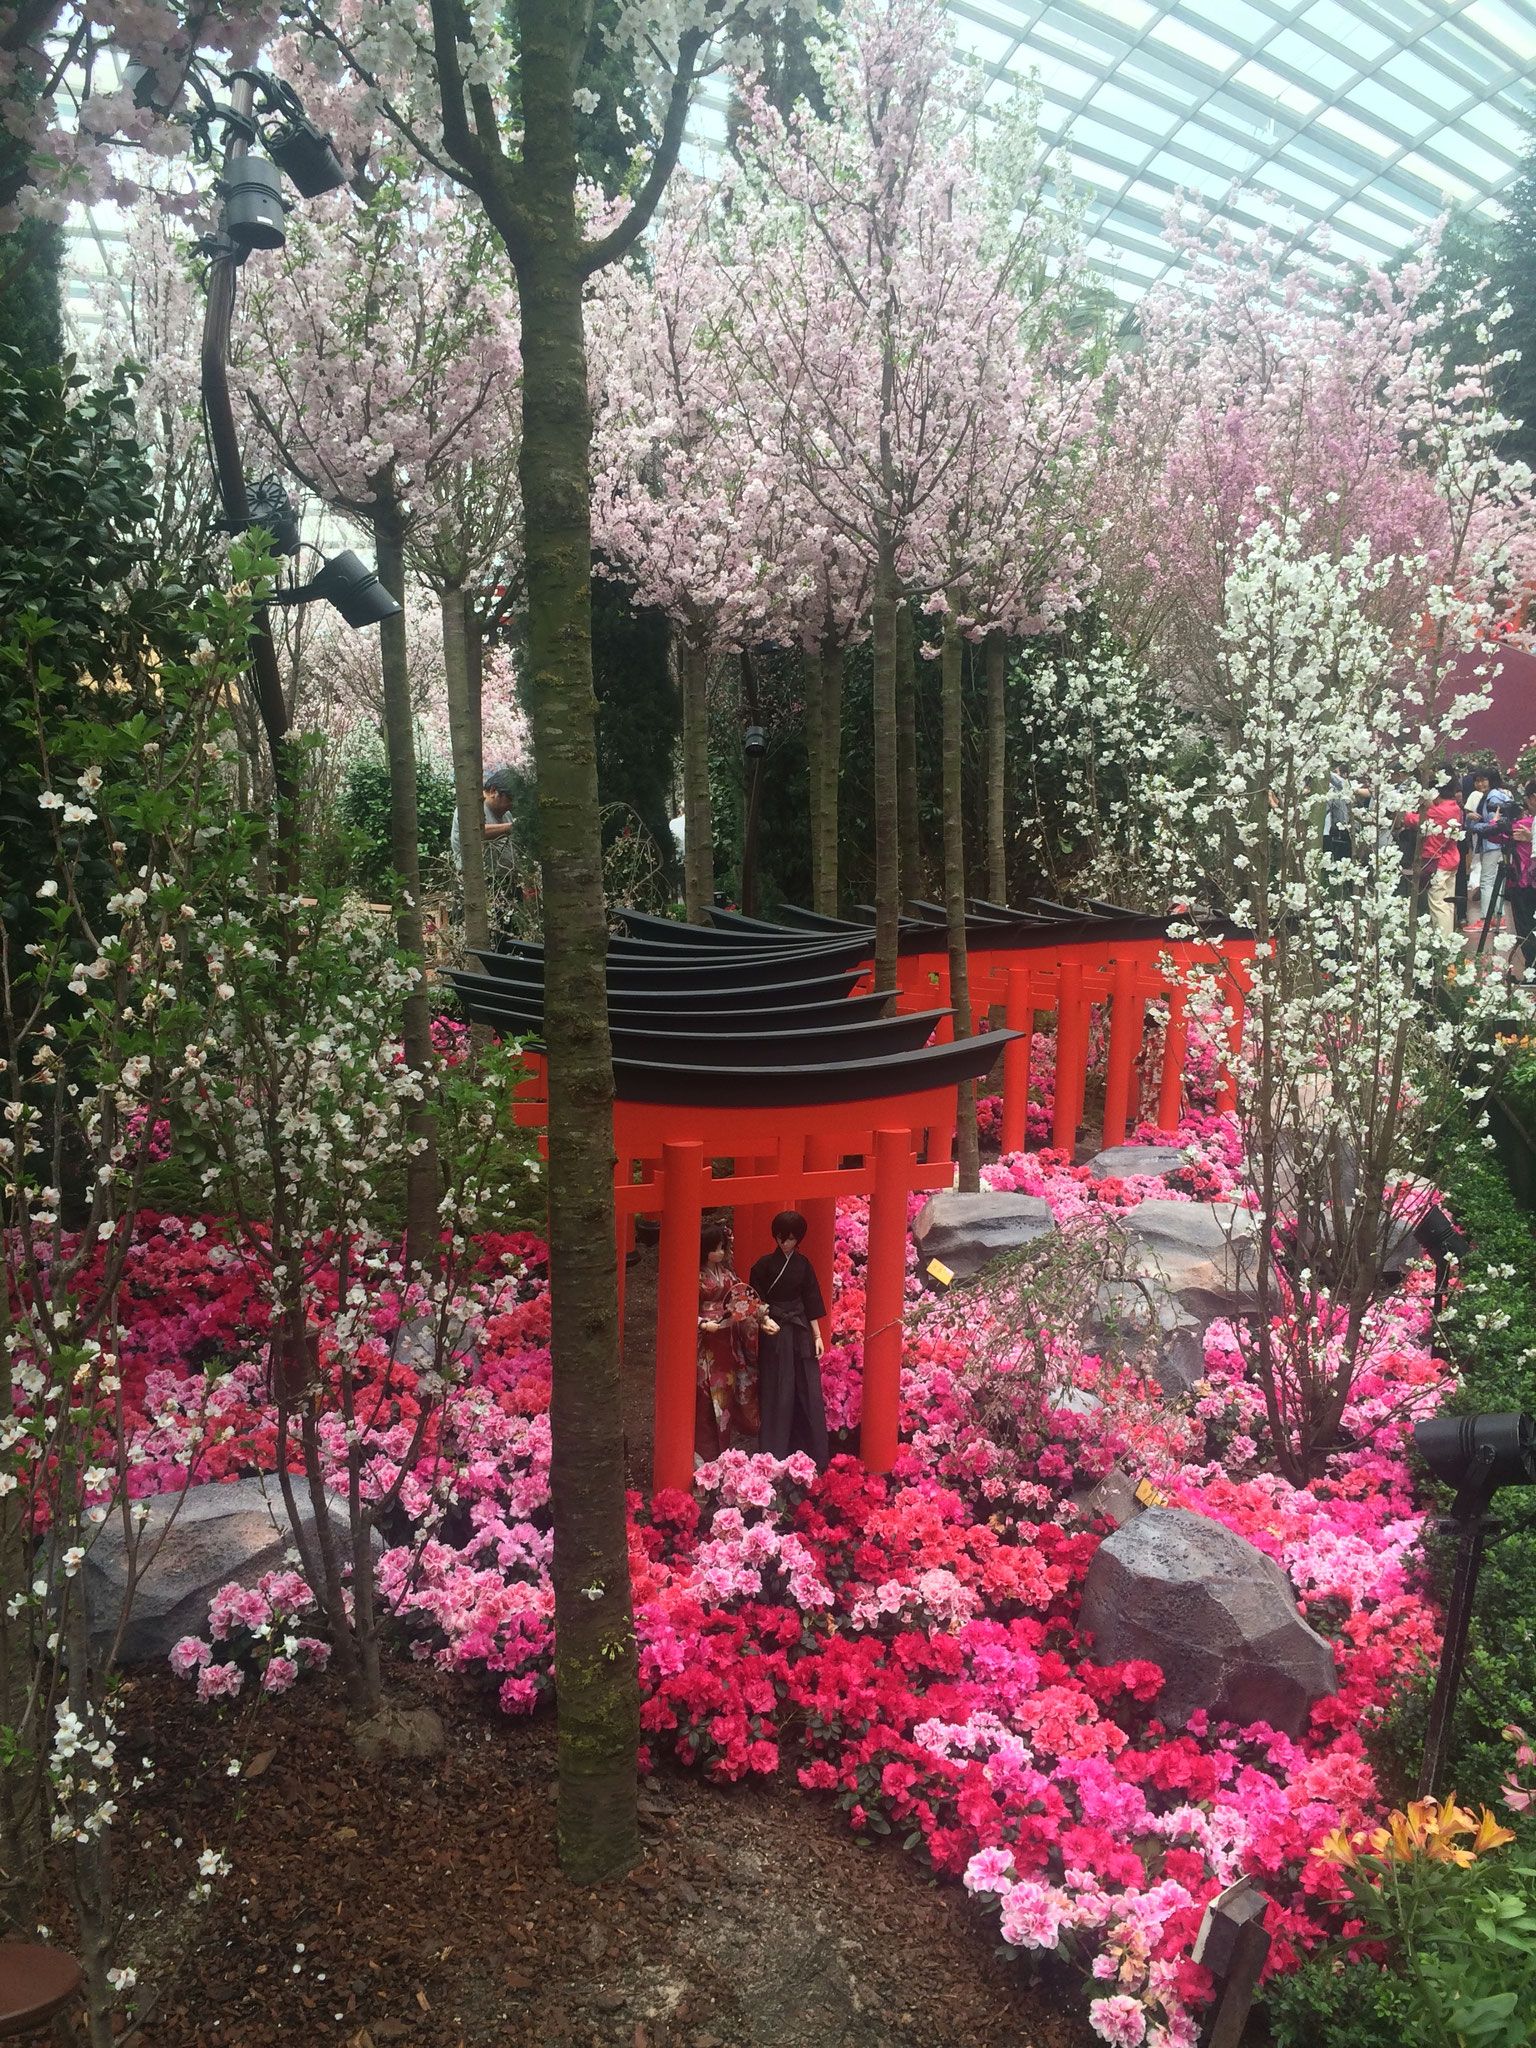 Da momentan in Japan das Sakurafest stattfindet, stand auch der "Flower Dome" unter diesem Motto ;)